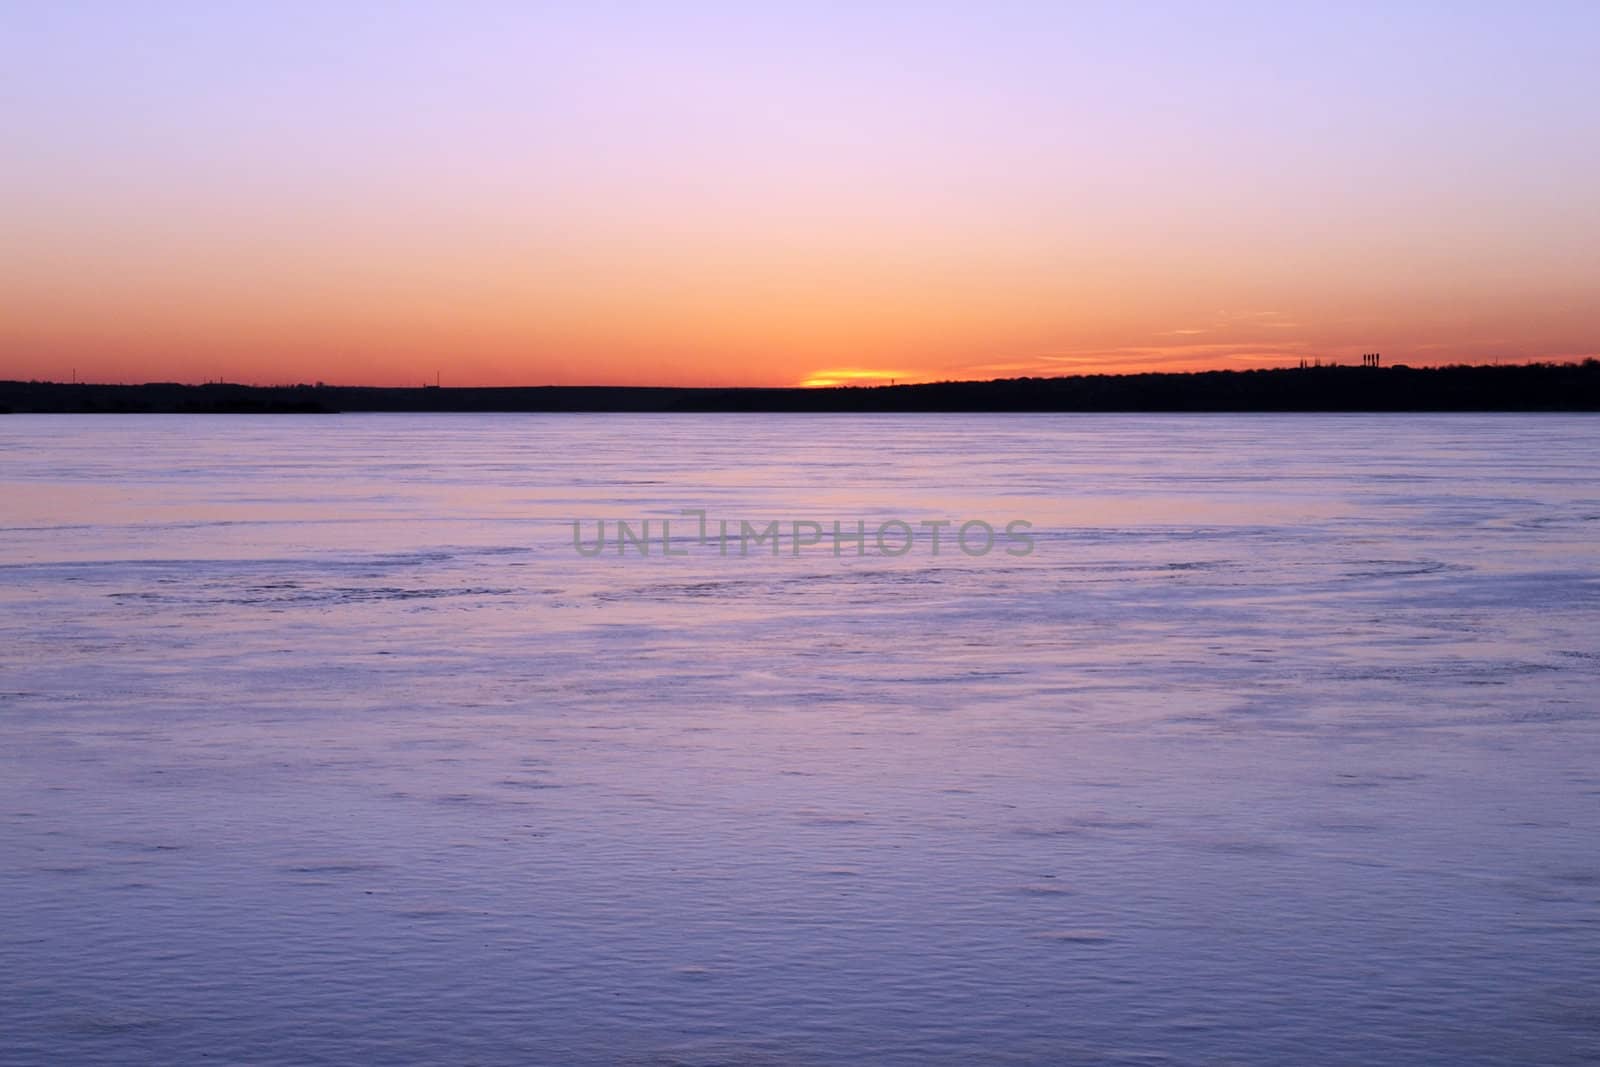 sunset over frozen river